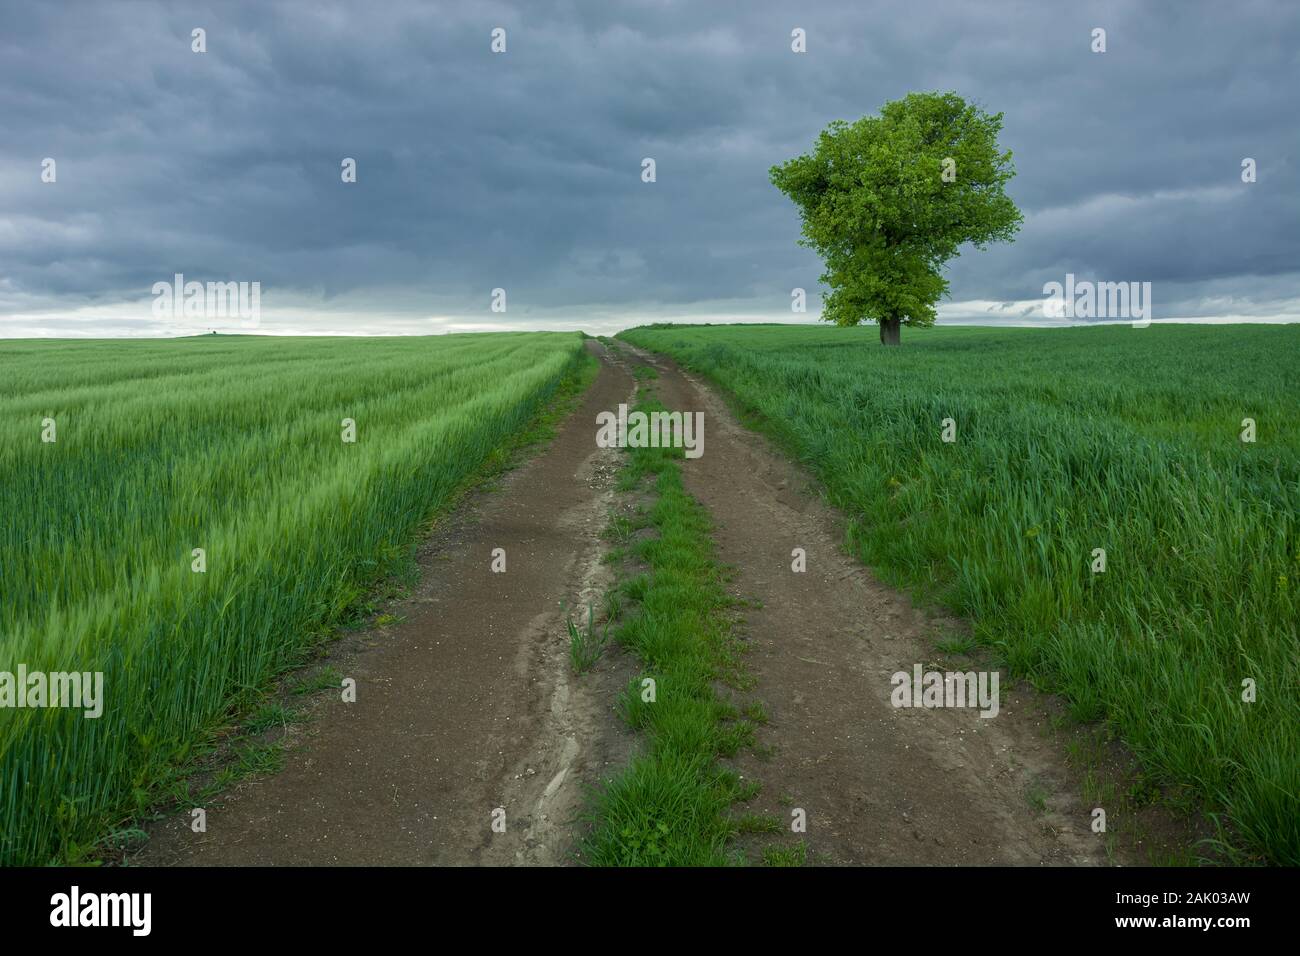 Lange, unbefestigte Straße durch grüne Felder mit Getreide, einsamer Baum und dunklen regnerischen Wolken Stockfoto